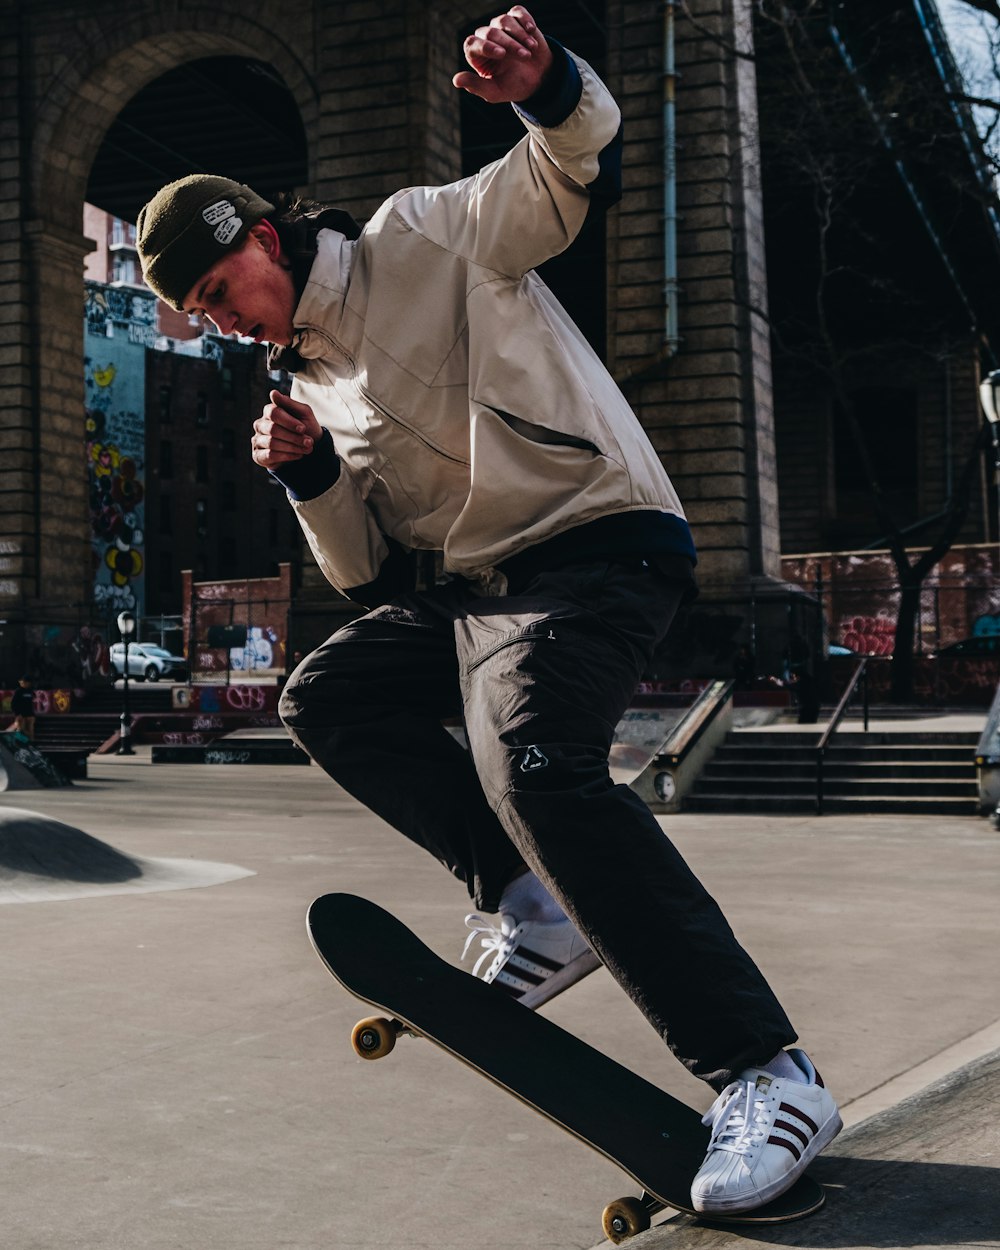 man playing skateboard on street